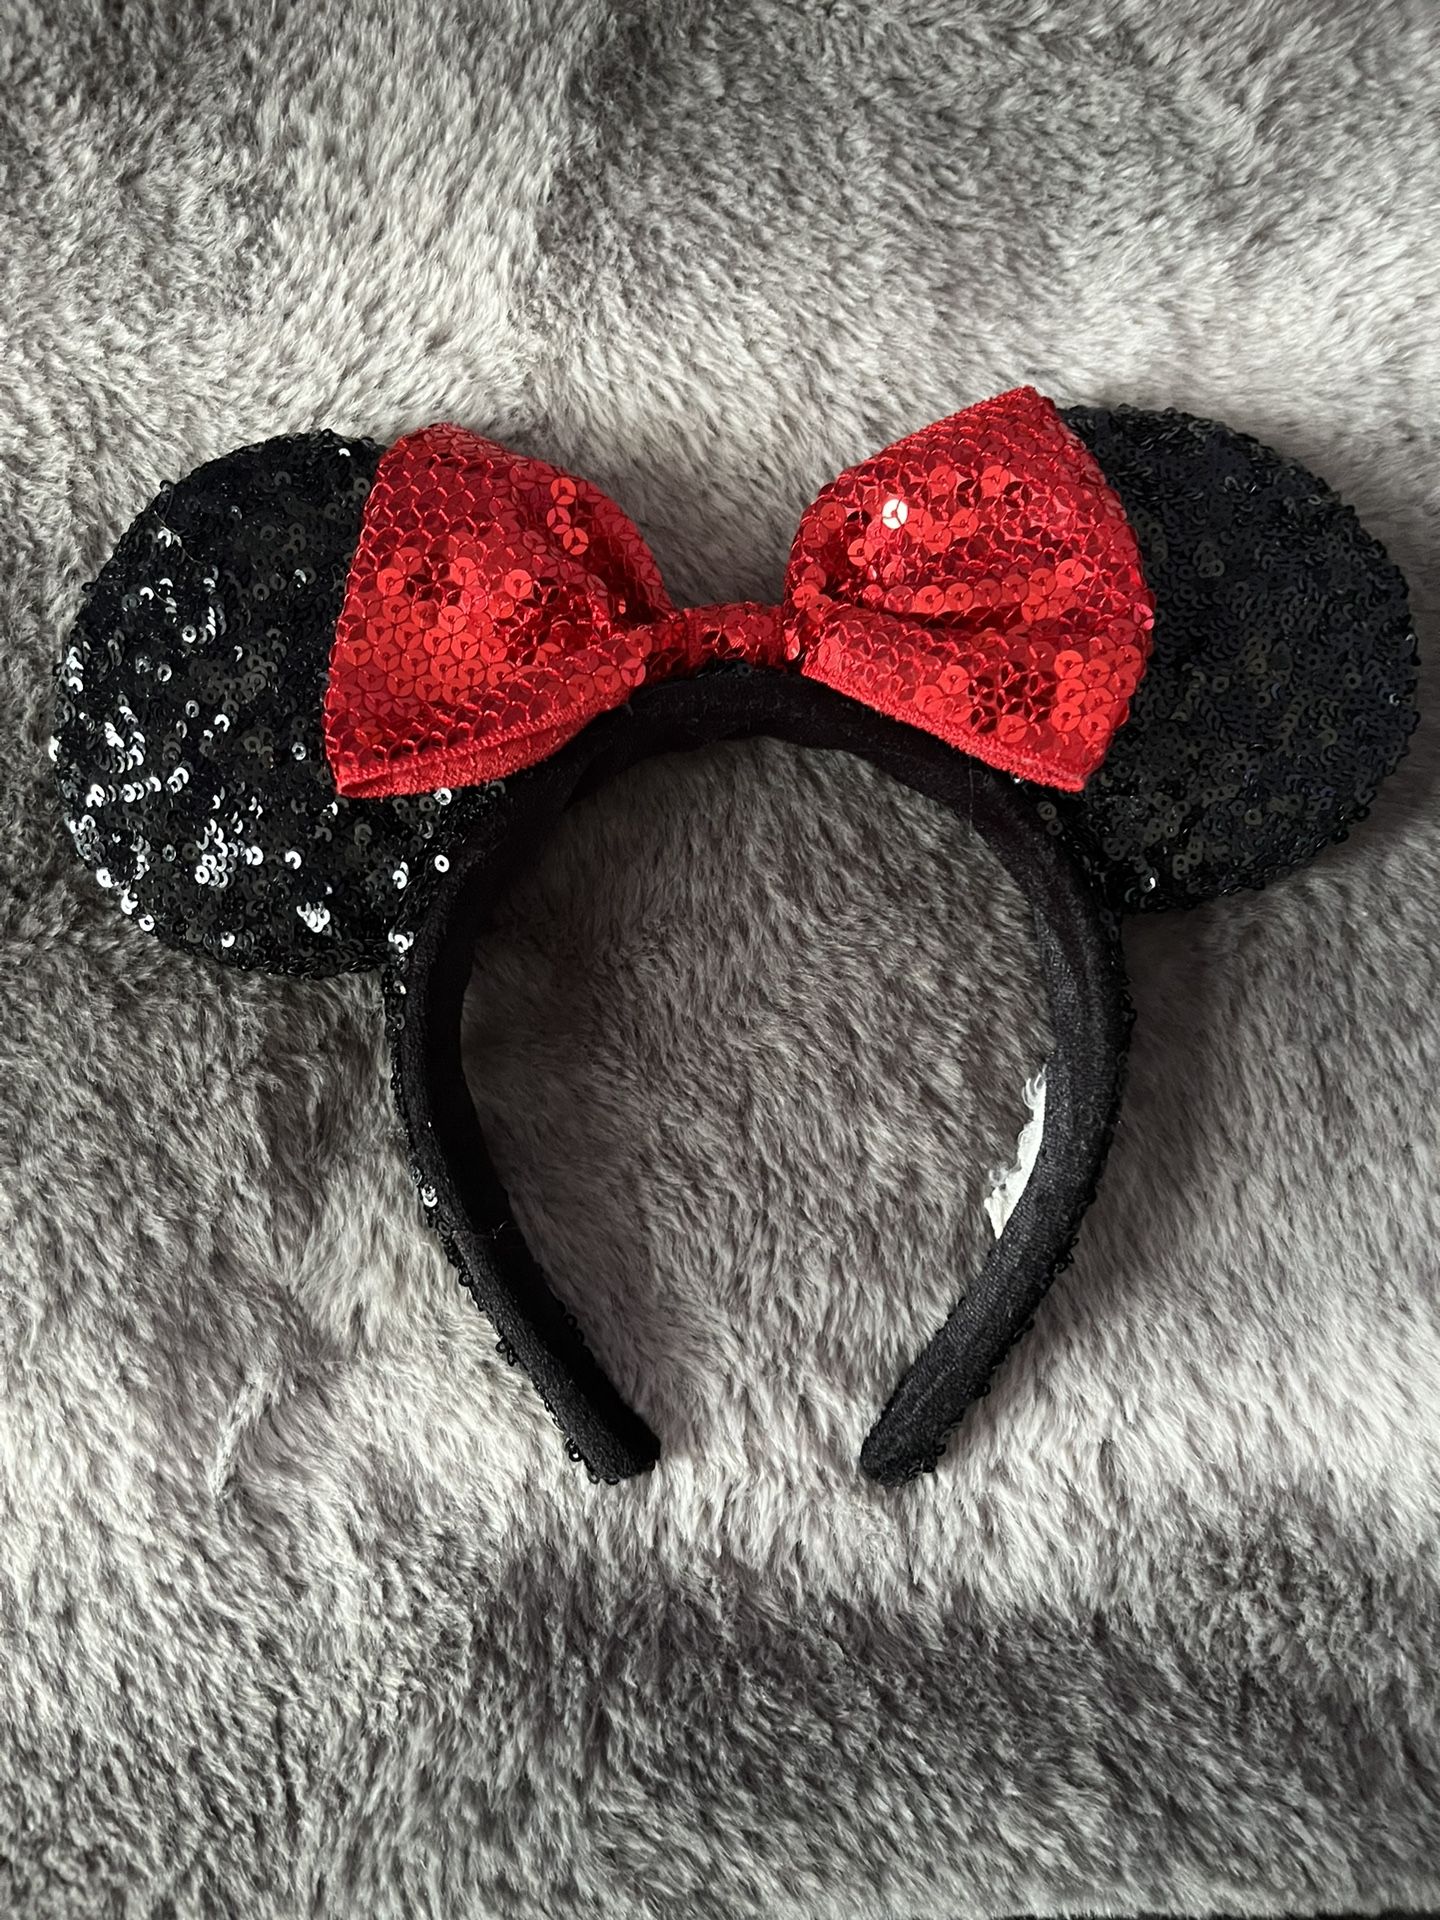 Disney Ears